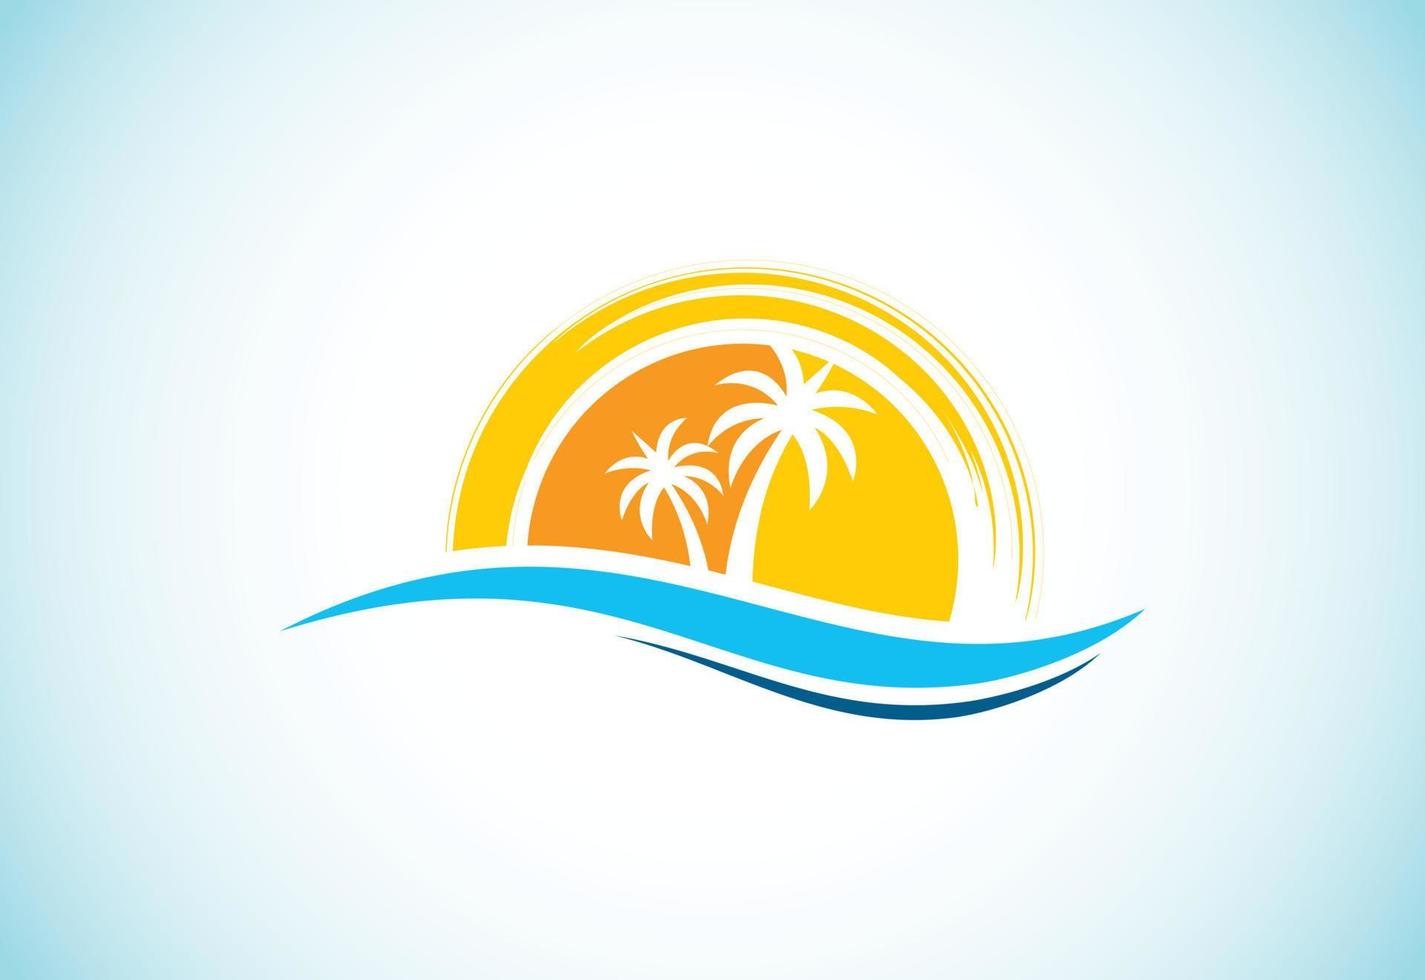 diseño de logotipo de playa tropical único moderno simple vector